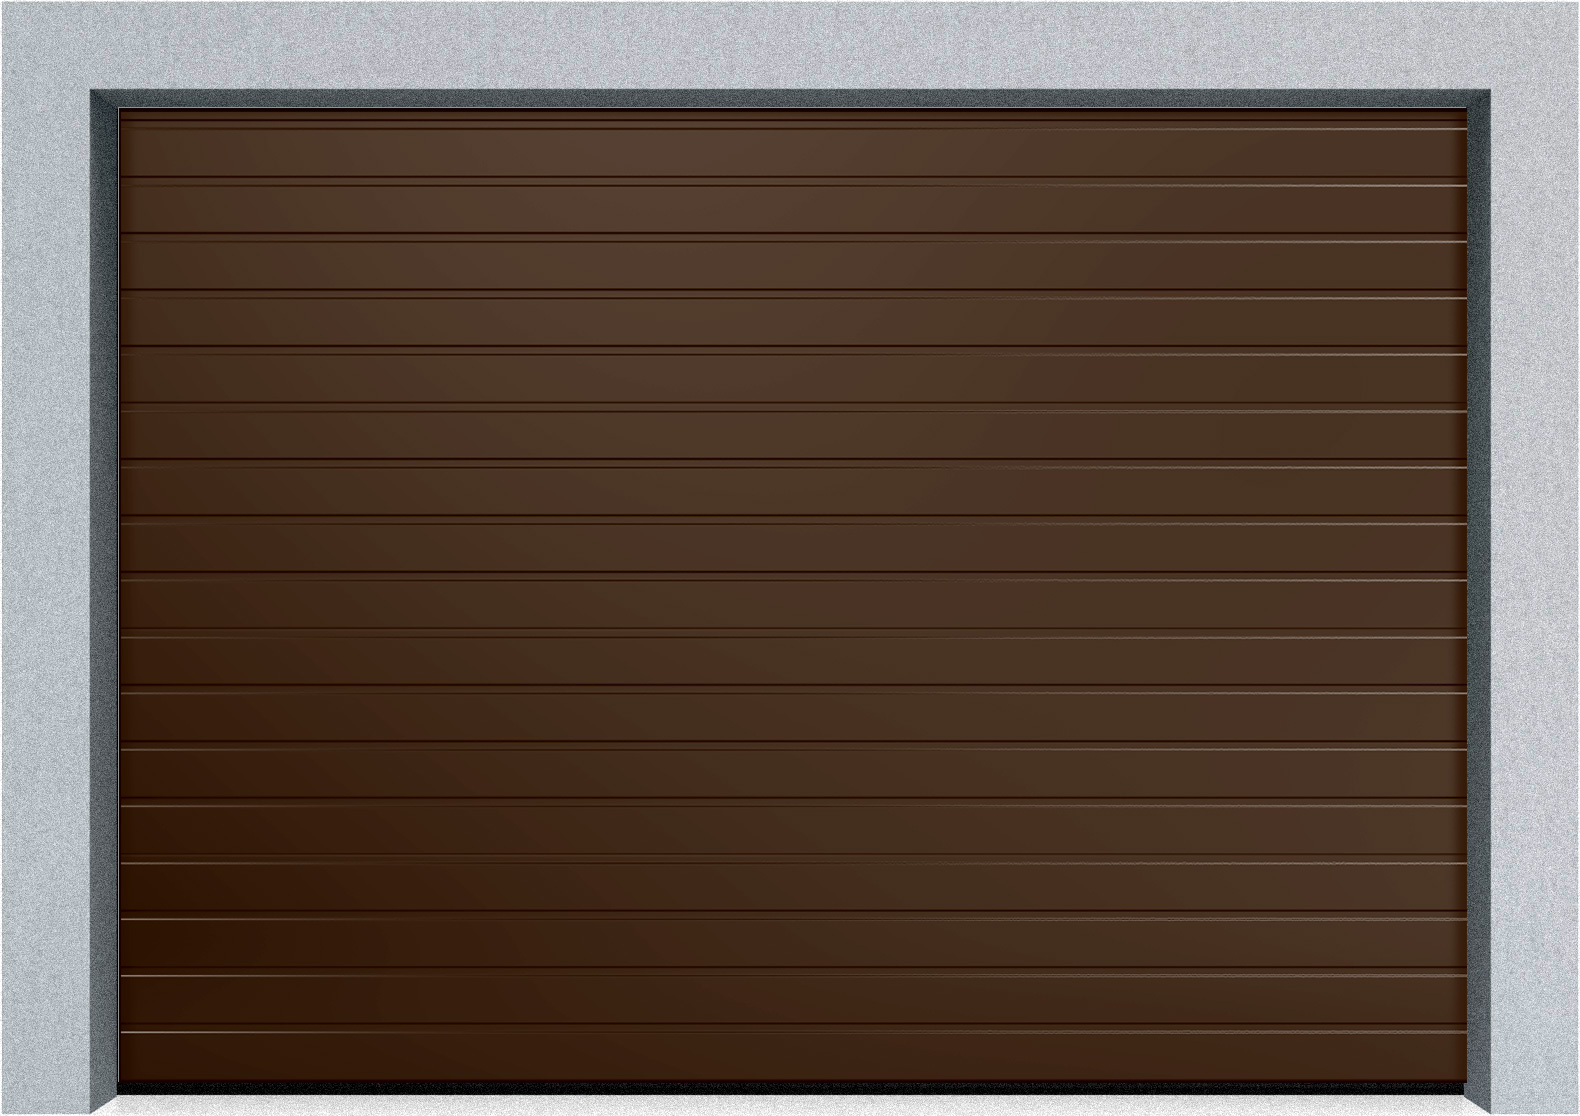  Секционные гаражные ворота DoorHan RSD01 2500x2200 S-гофр, M-гофр, Микроволна стандартные цвета, пружины растяжения, фото 2 